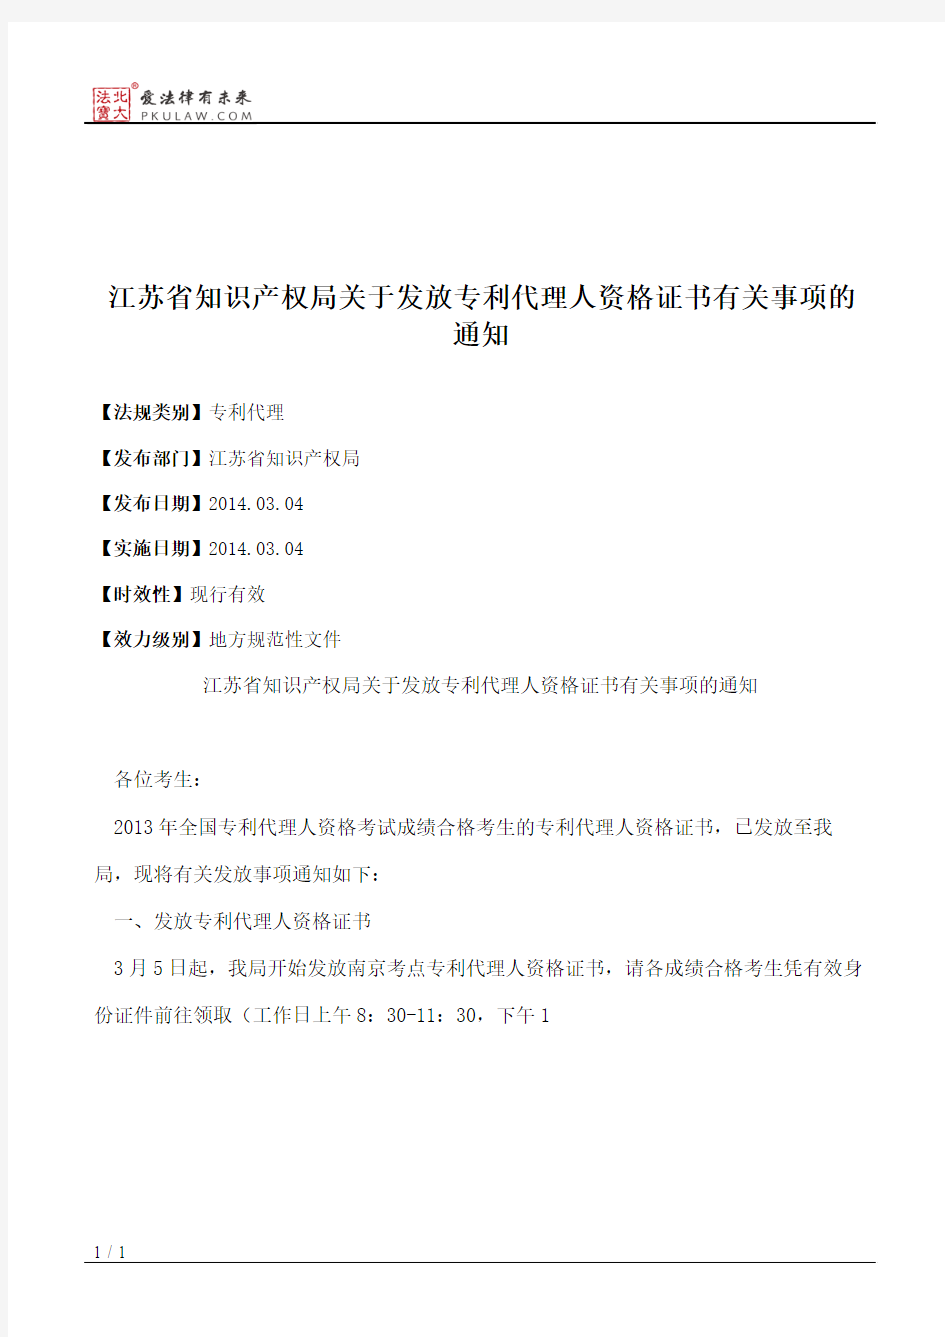 江苏省知识产权局关于发放专利代理人资格证书有关事项的通知